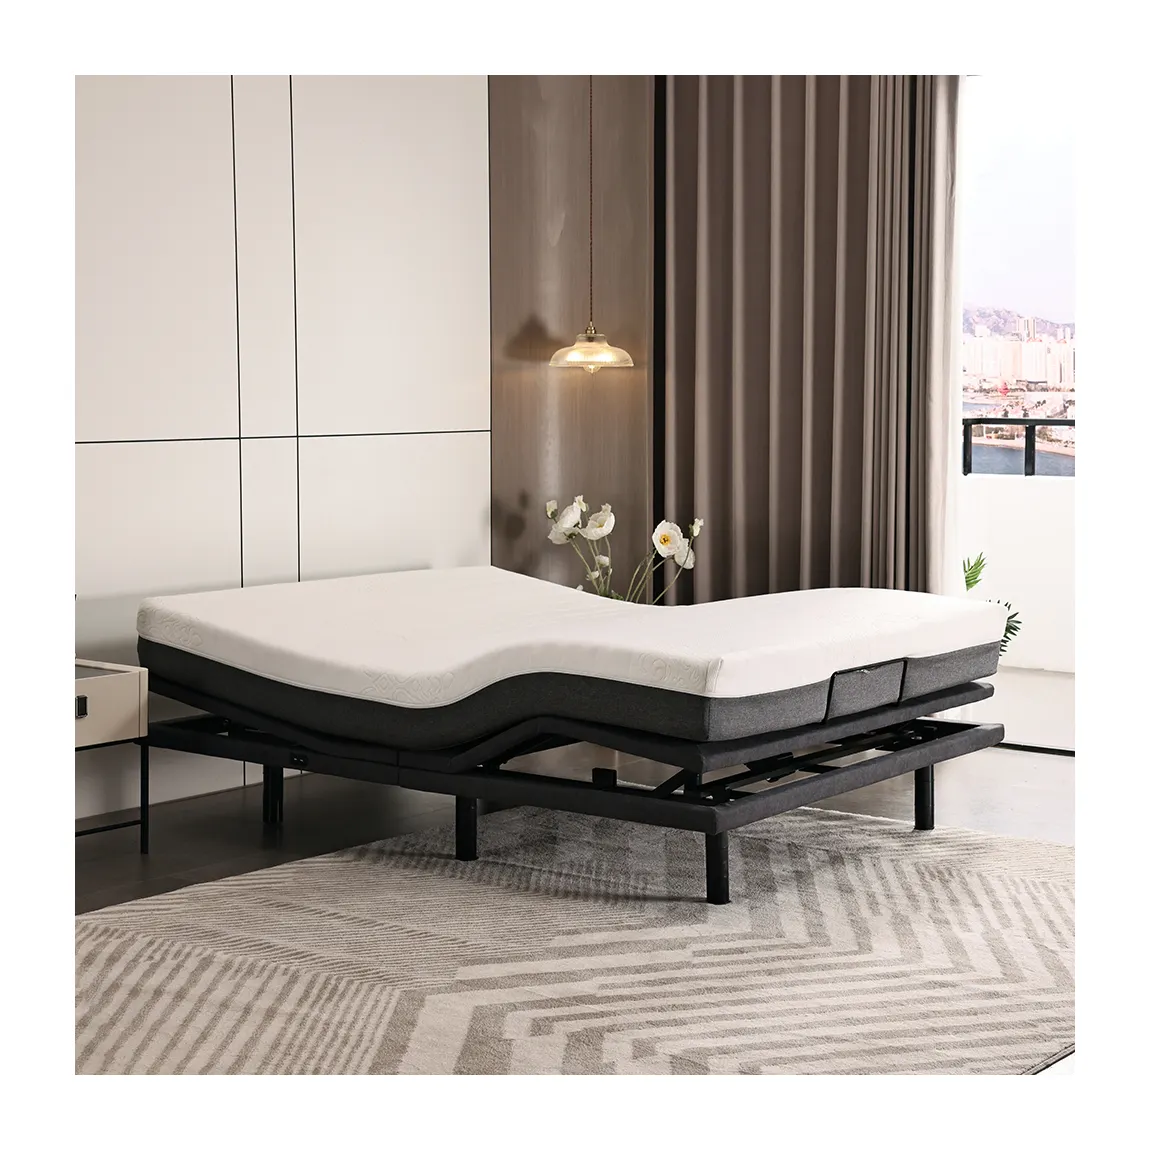 Meisemobel elektrischer ergonomischer Boden für das Bett mit Vibrationsmassage, ergonomisches Massagebett, elektrisch verstellbare Bettrahmen-Rückenlehne